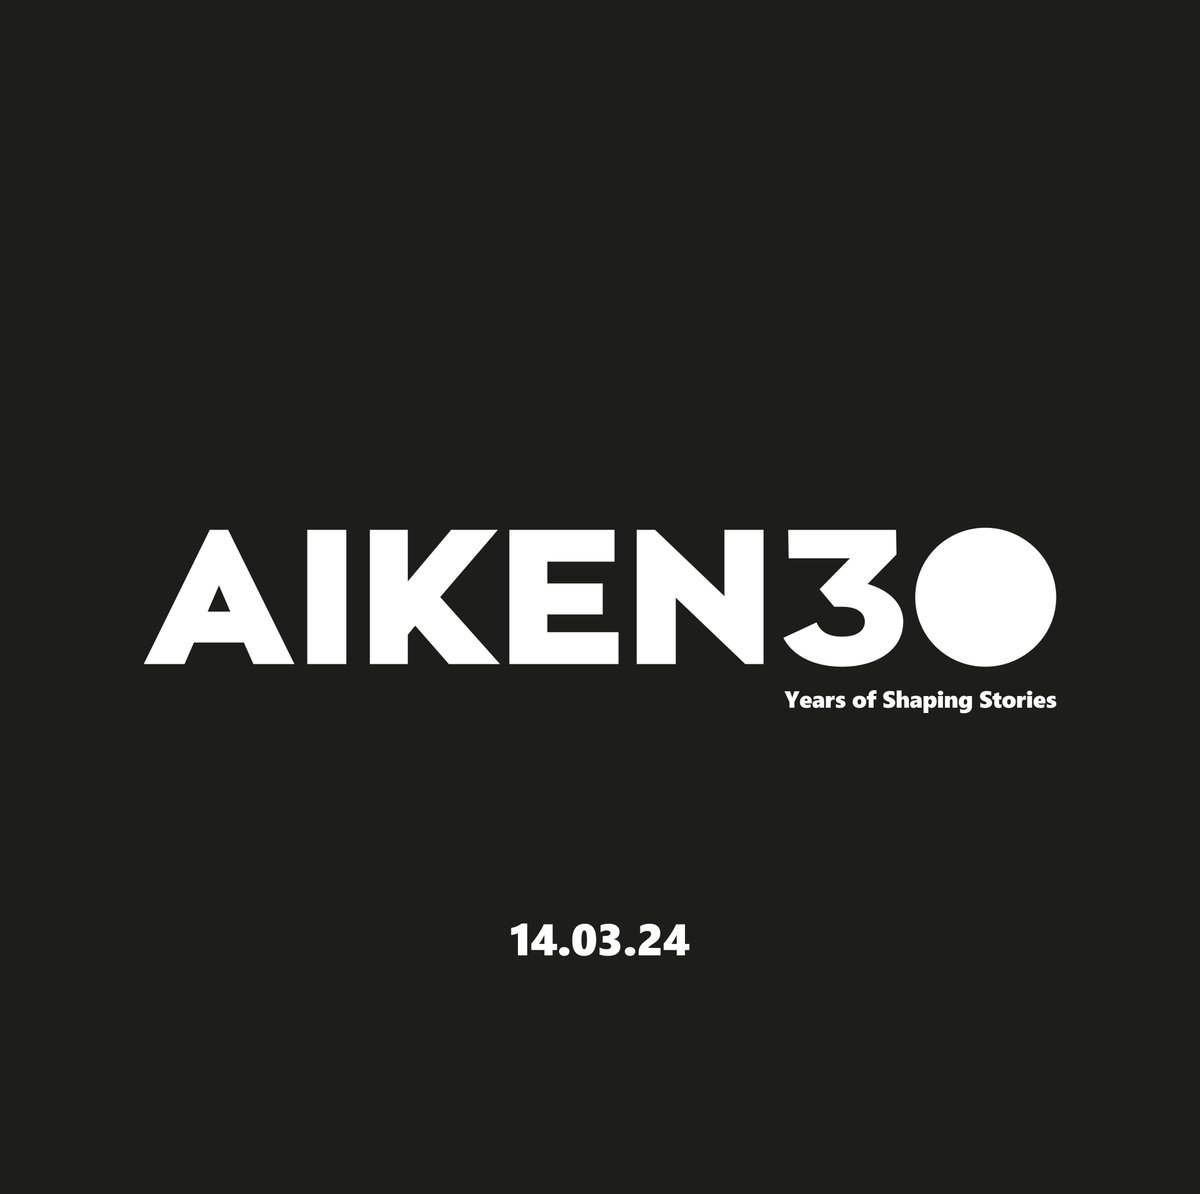 📢 On Thursday, we mark 30 years of AIKEN. #StayTuned